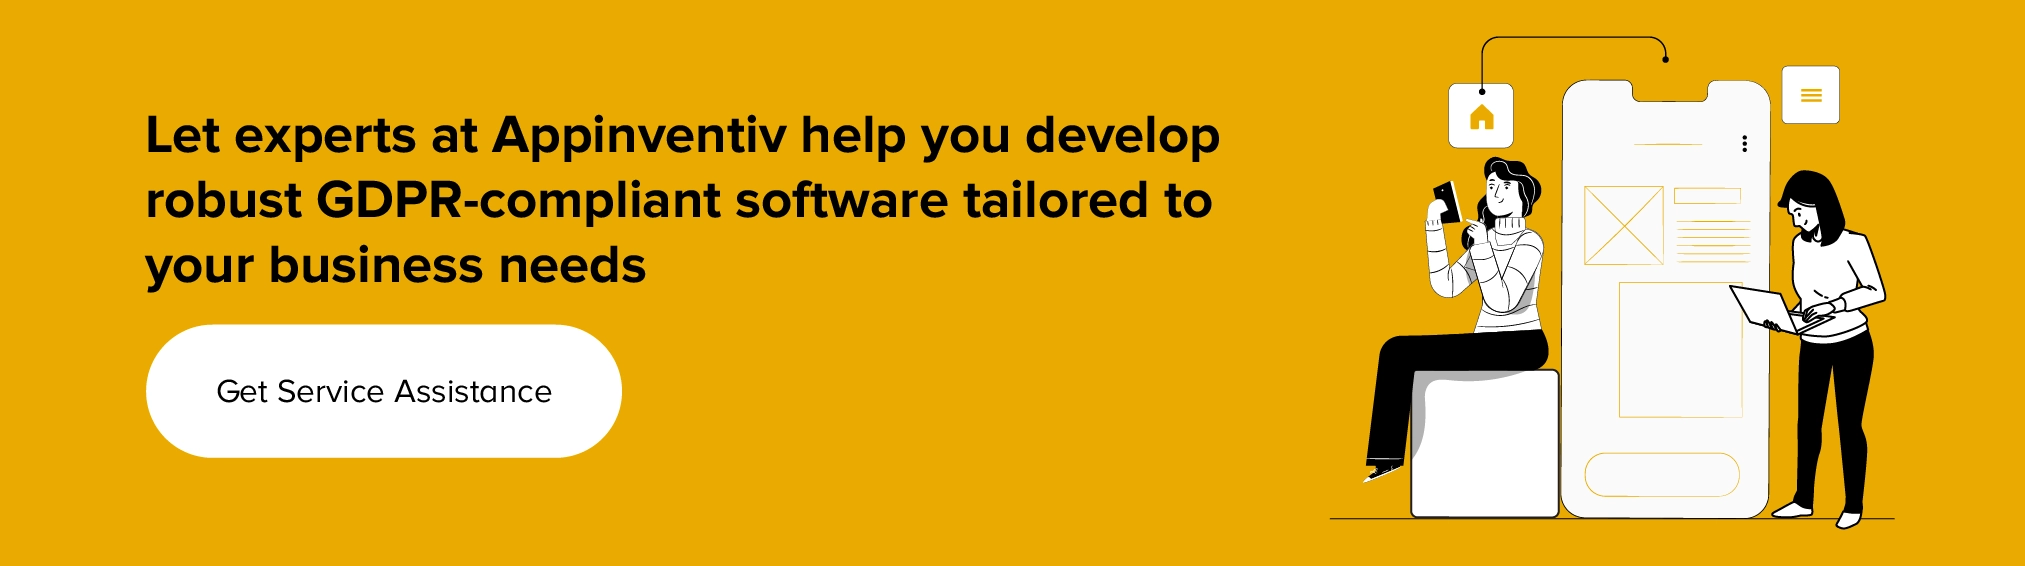 Obțineți asistență de service pentru a dezvolta software compatibil cu GDPR